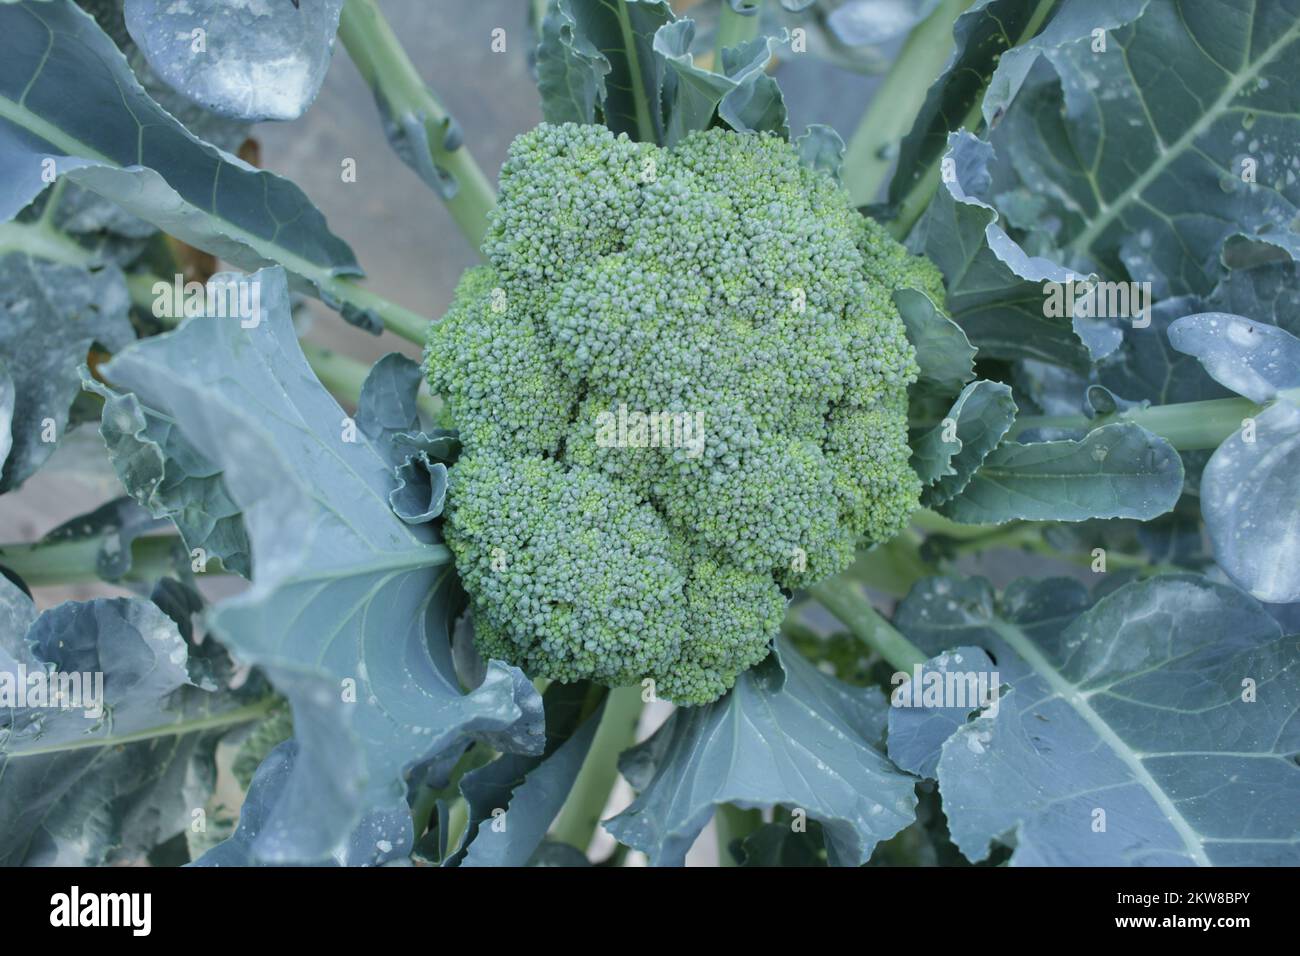 crop of broccoli in garden Stock Photo